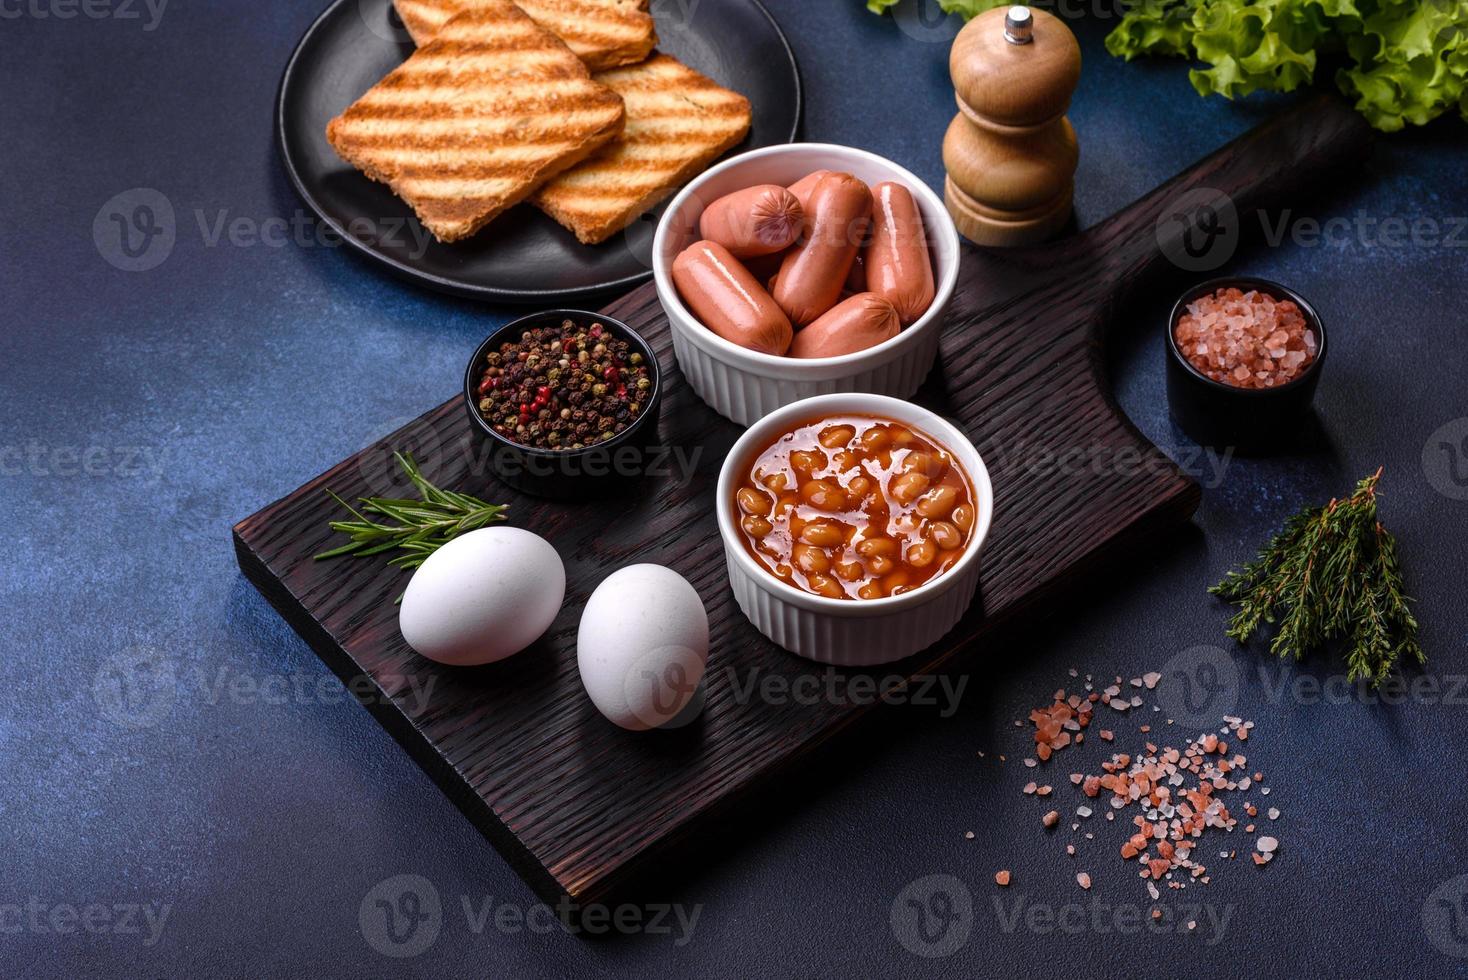 traditionell engelsk frukost med ägg, rostat bröd, korvar, bönor, kryddor och örter på en grå keramisk tallrik foto